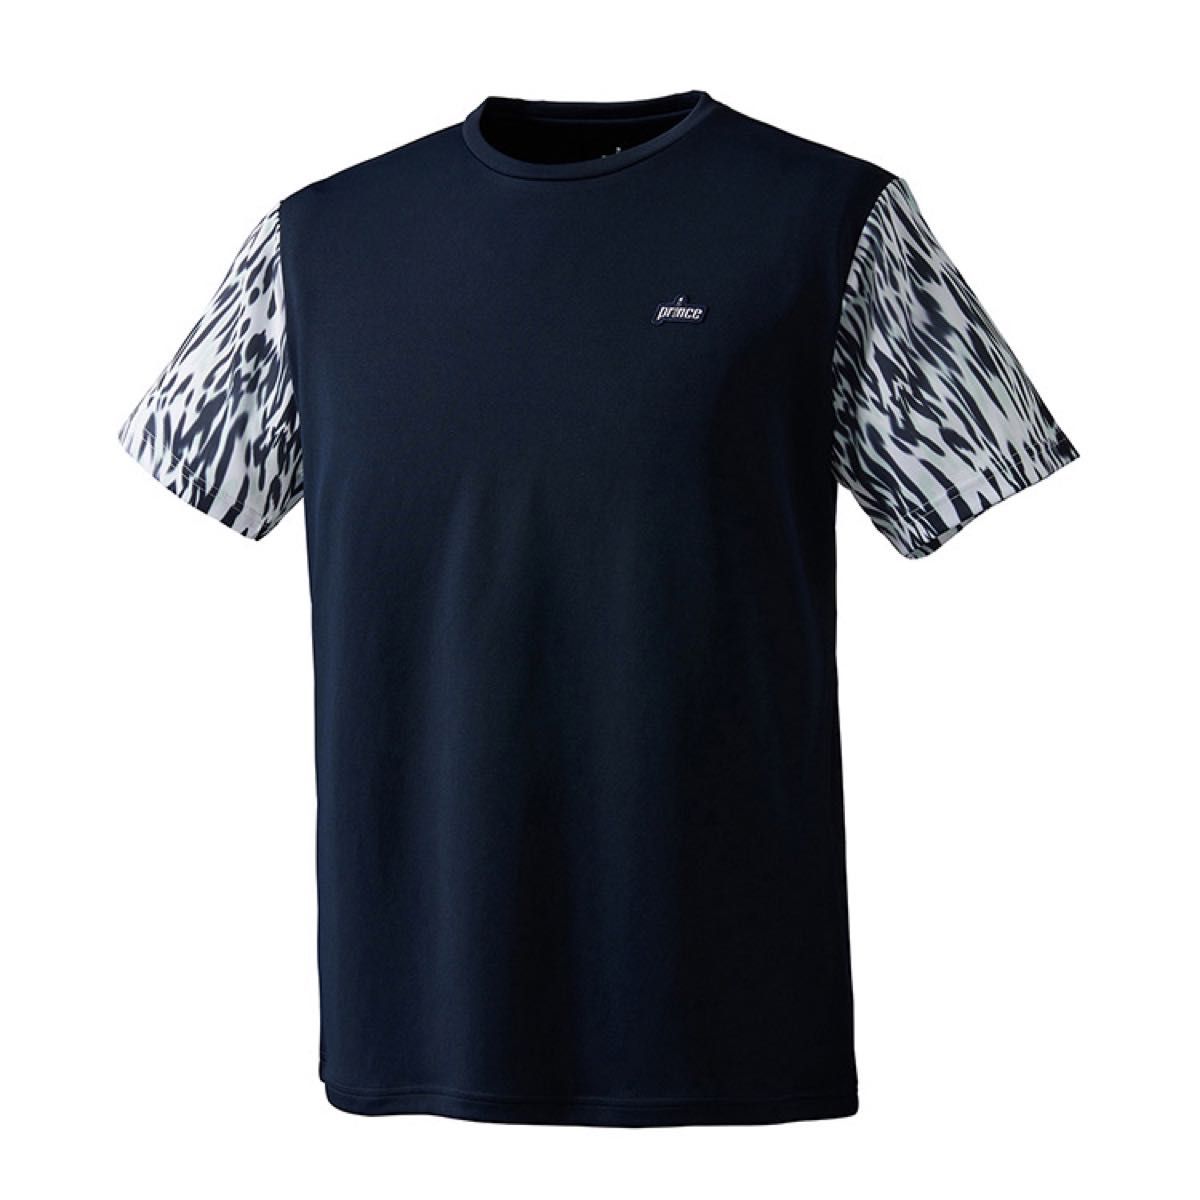 Prince プリンス テニスウェア 半袖Tシャツ ゲームシャツ MS3005 ネイビー(紺) ユニセックスL 新品